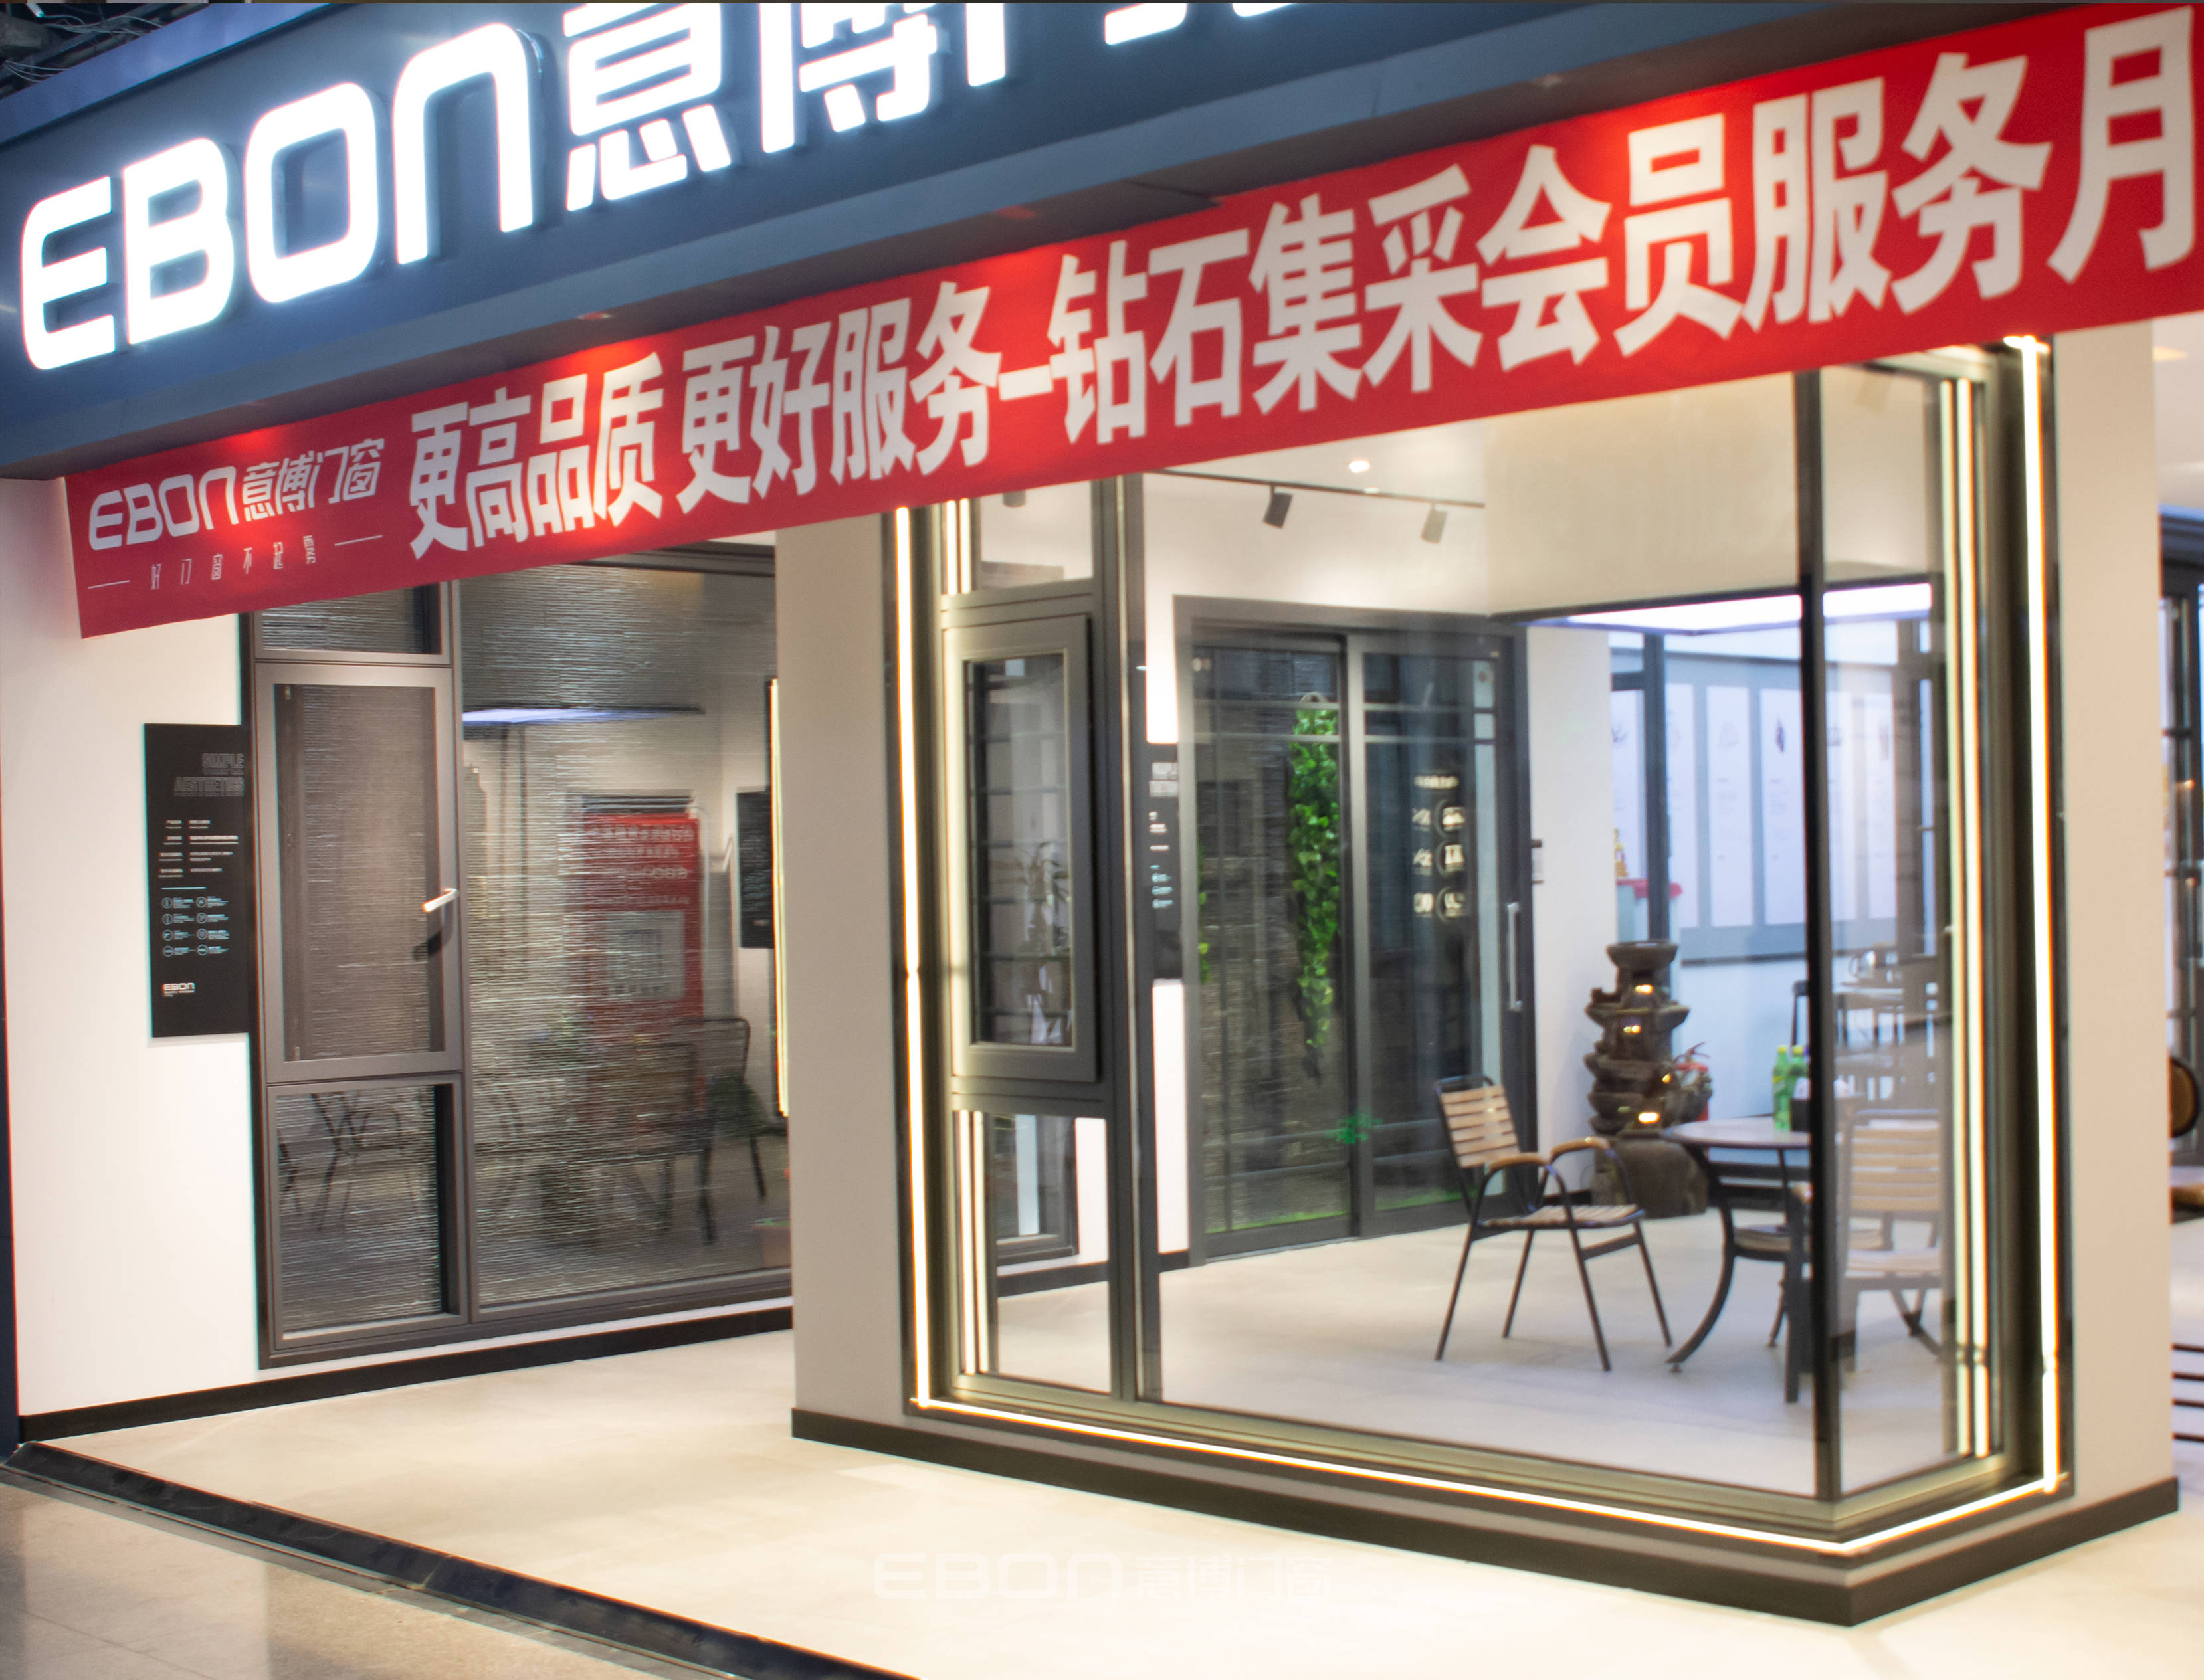 专访意博门窗优秀经销商刘维标,看他如何提升门窗实体店的销量!